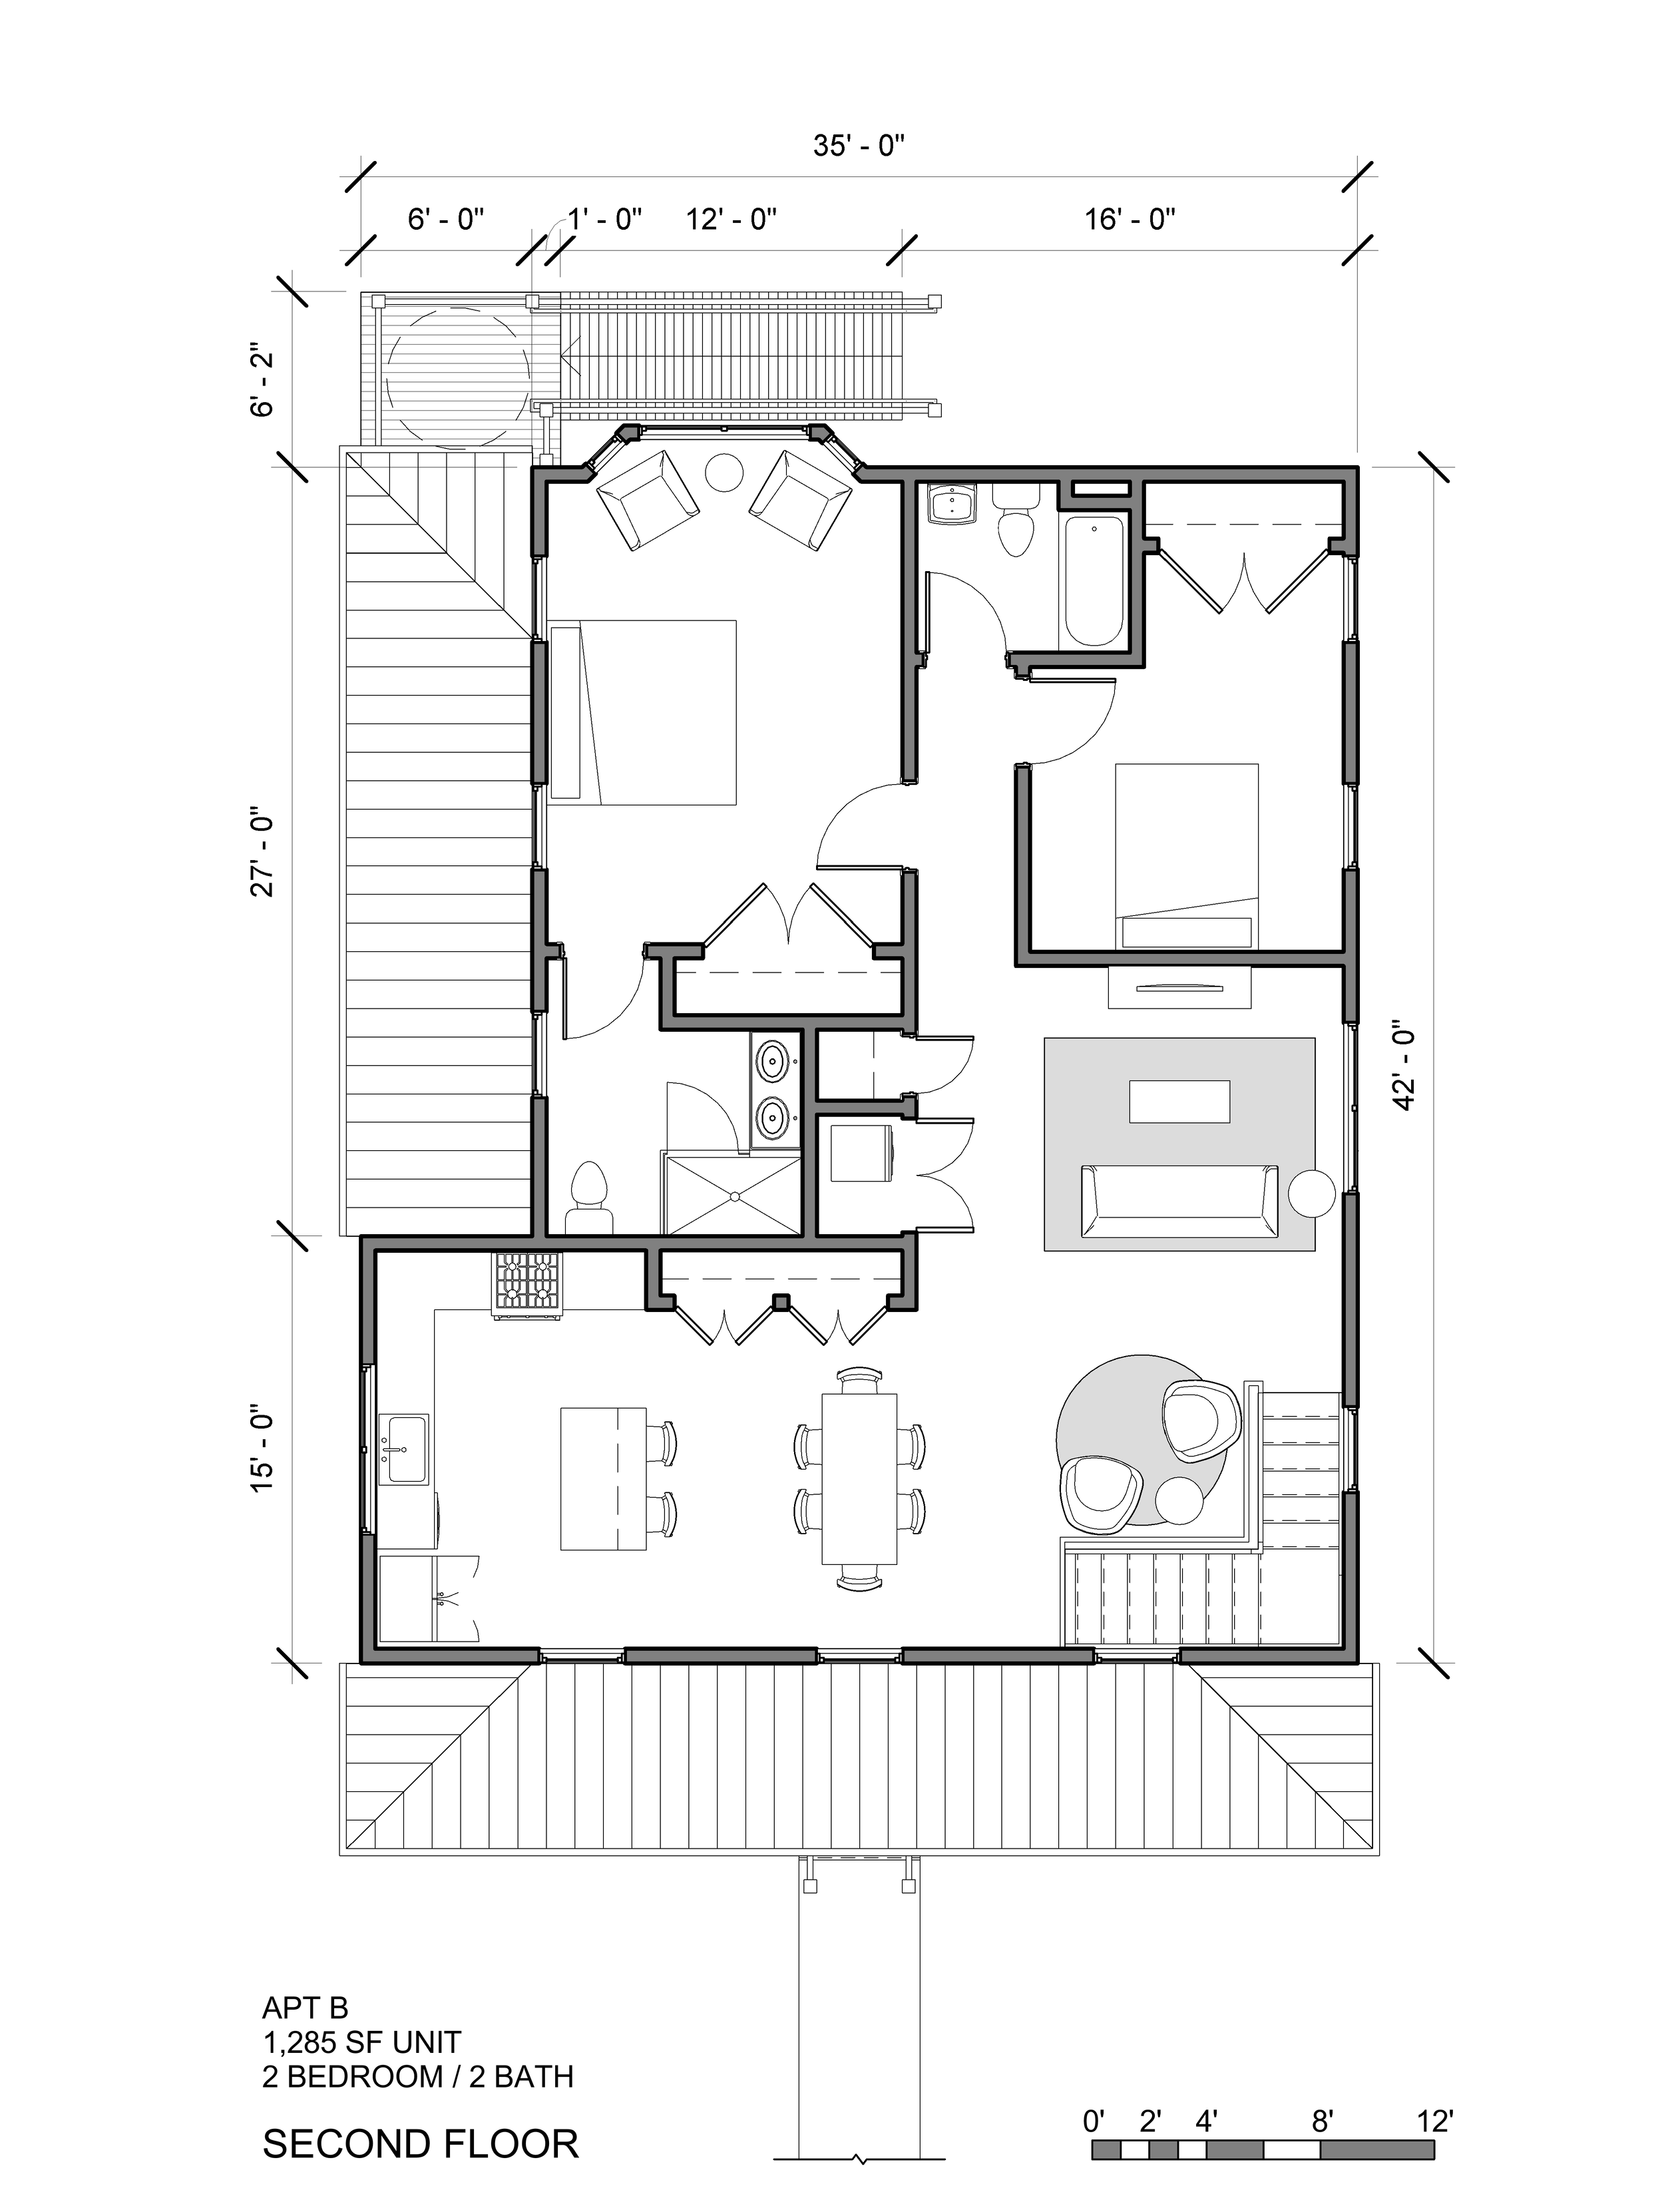 2021-05-09 BRILC Concept Plans - Floor Plan - 1002 CAMPBELL - SECOND FLOOR - SCHEMATIC.png